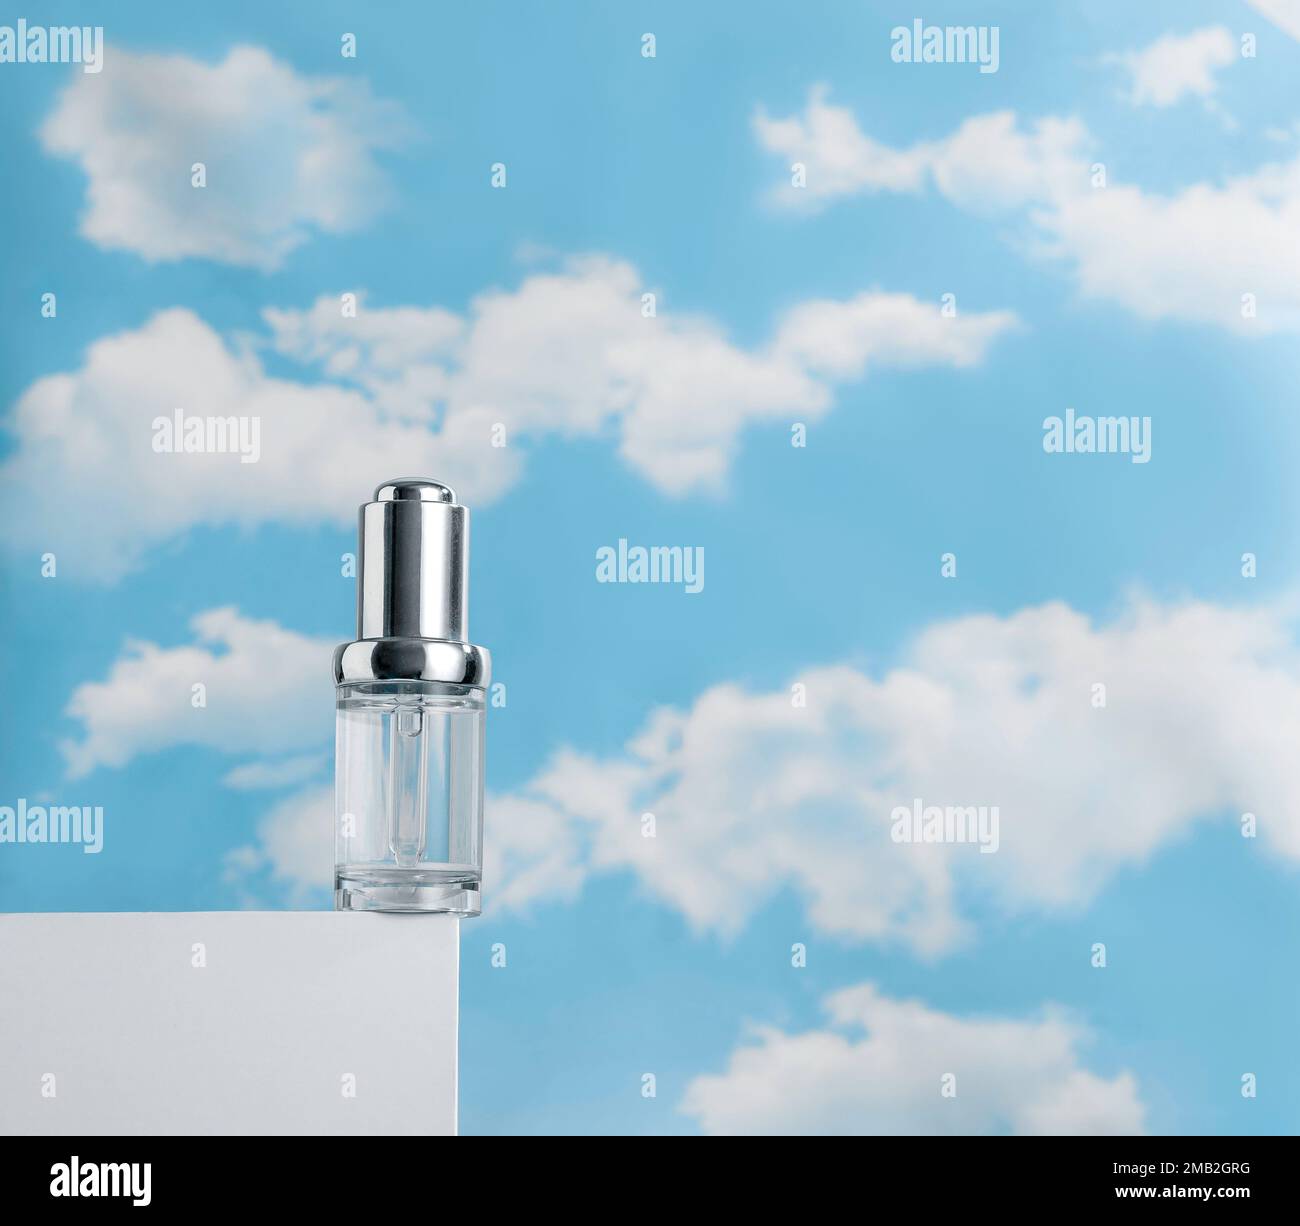 Sérum transparent sur podium blanc contre ciel bleu nuageux. Concept de légèreté des cosmétiques Banque D'Images